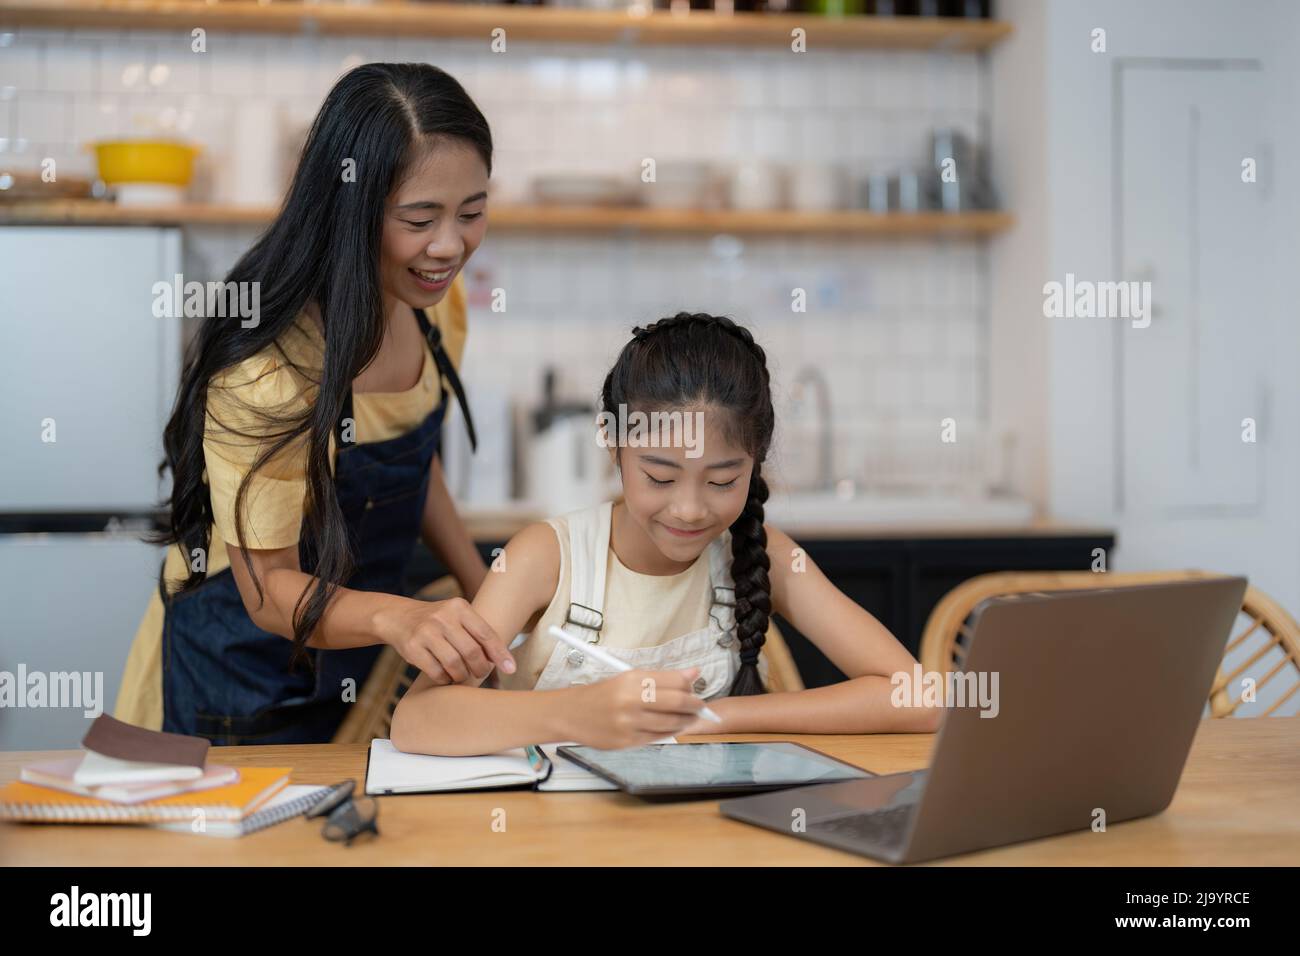 Madre asiatica e figlia piccola si siedono alla scrivania in cucina studiando in linea insieme, mamma biraciale e bambina piccola scrittura a mano del bambino, fanno i compiti, imparando Foto Stock